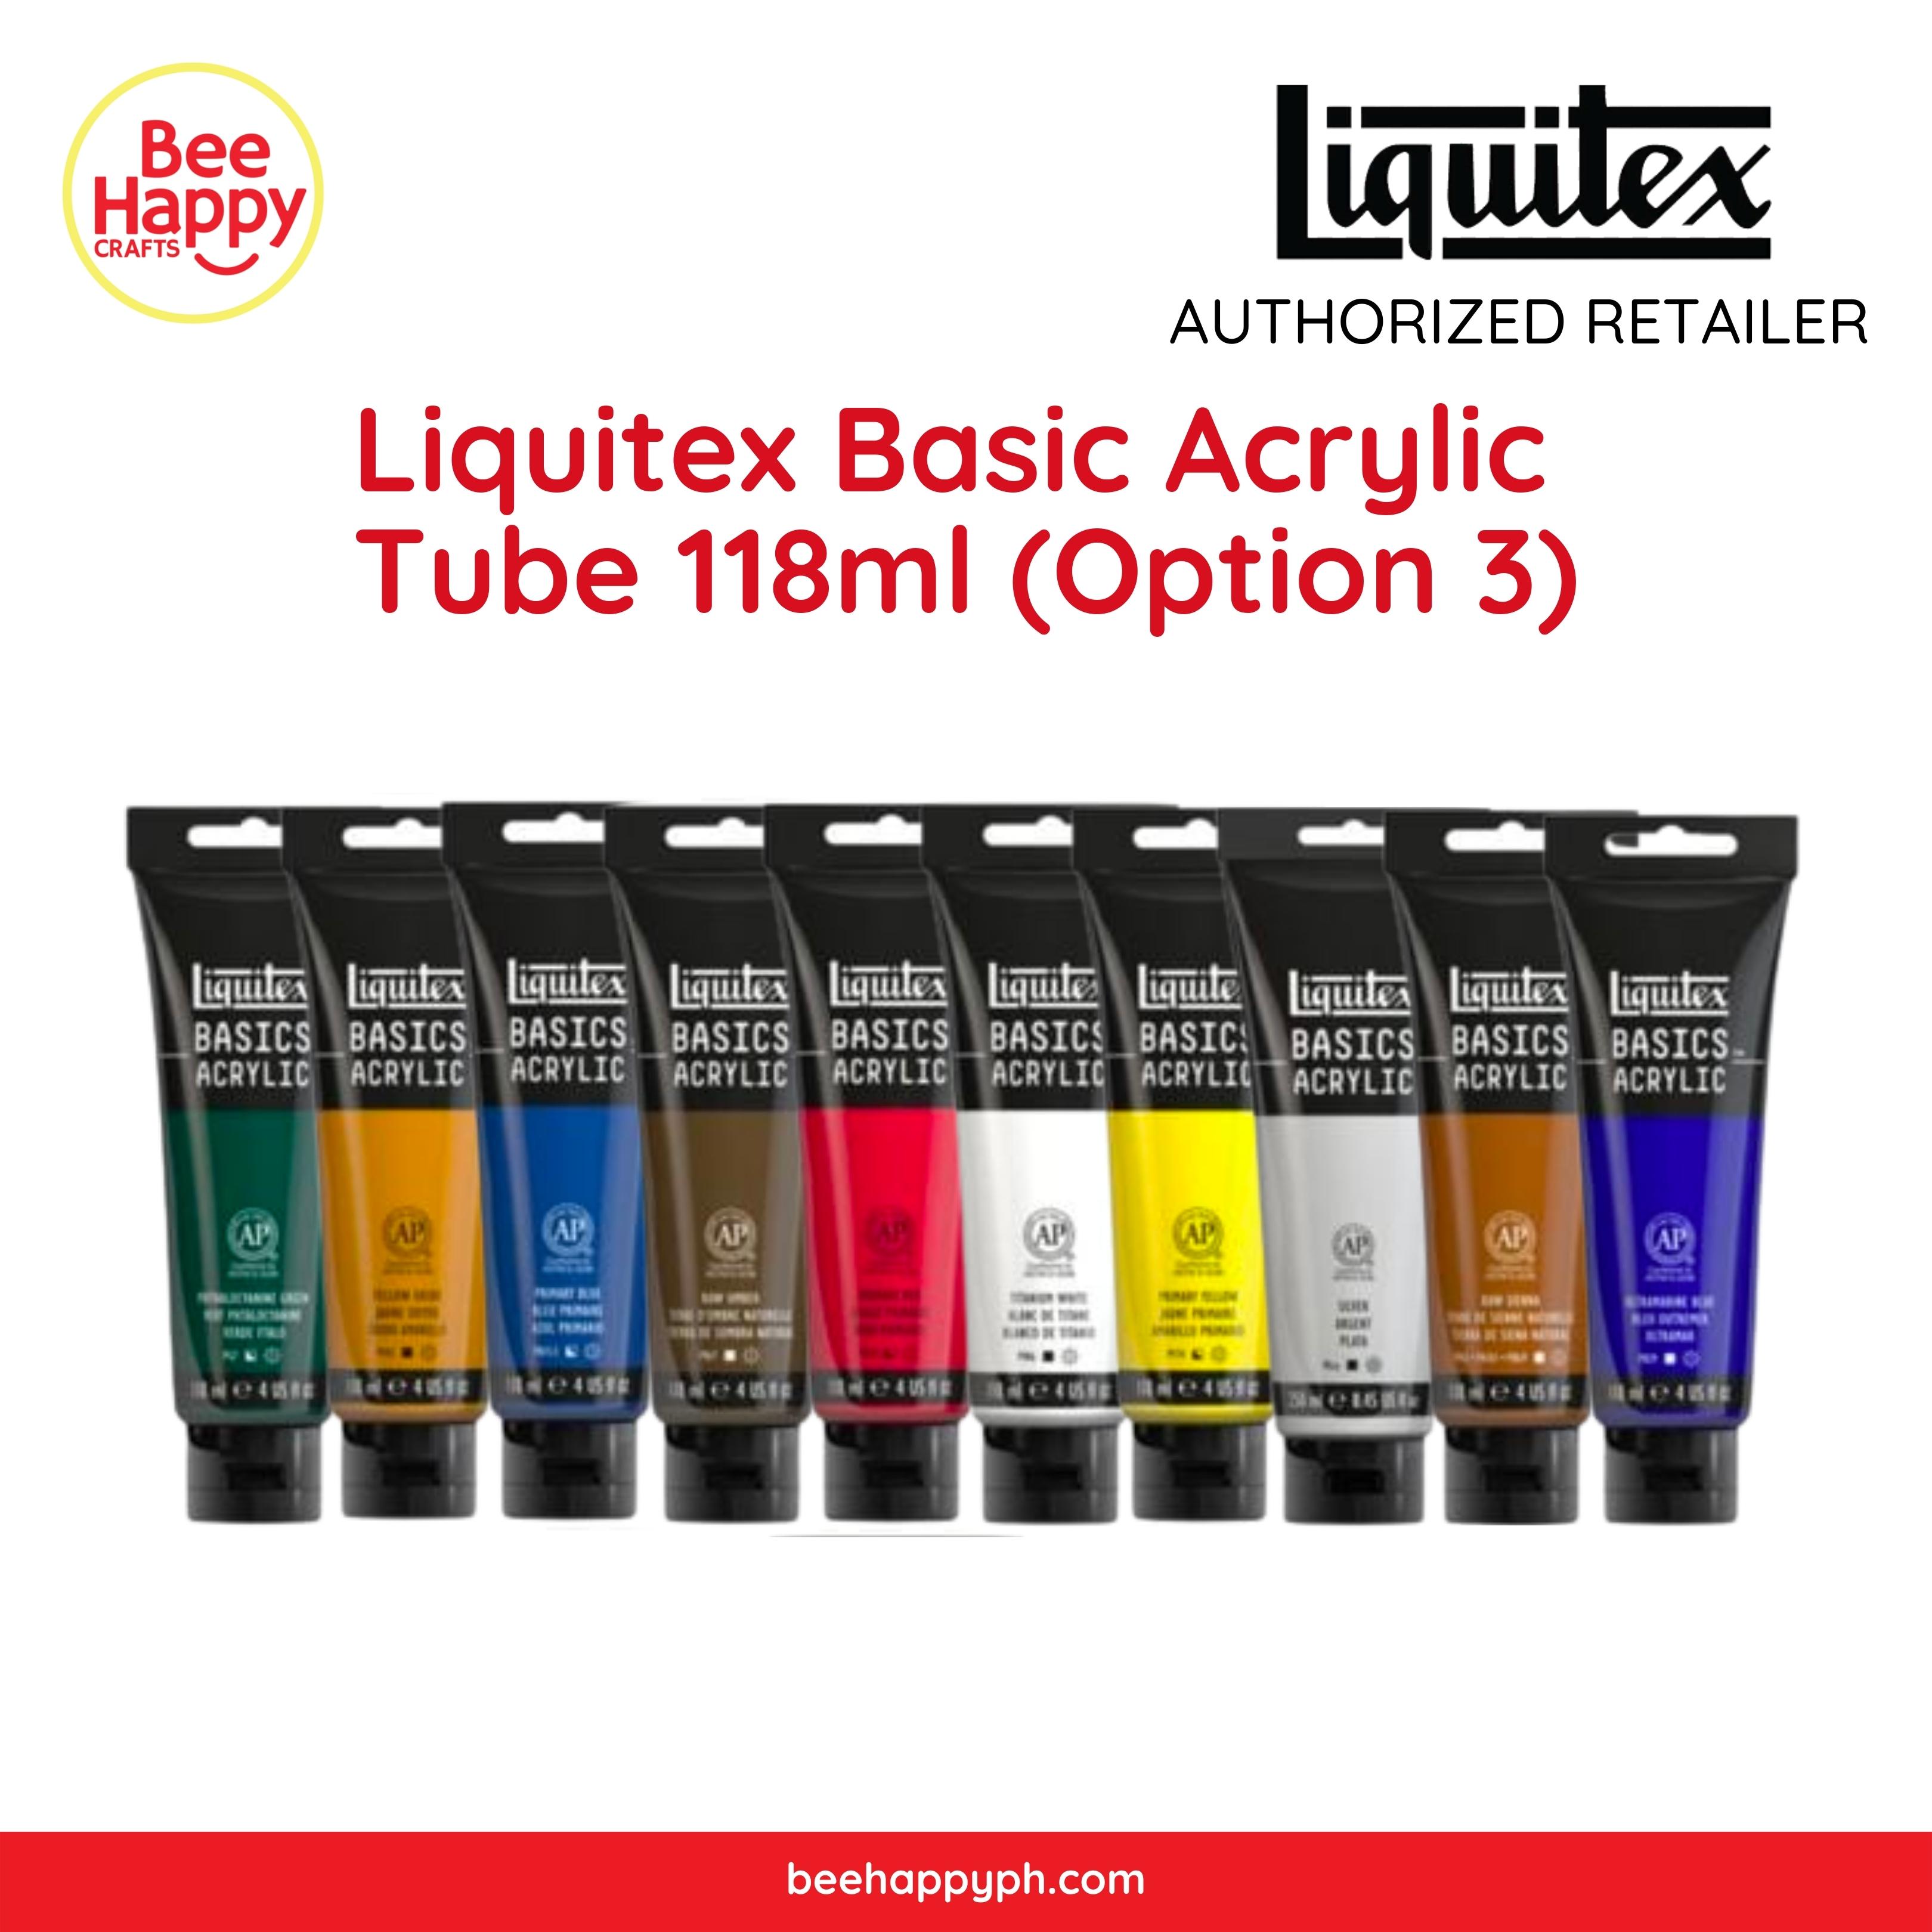 Liquitex Basic Acrylic 118ml Tube